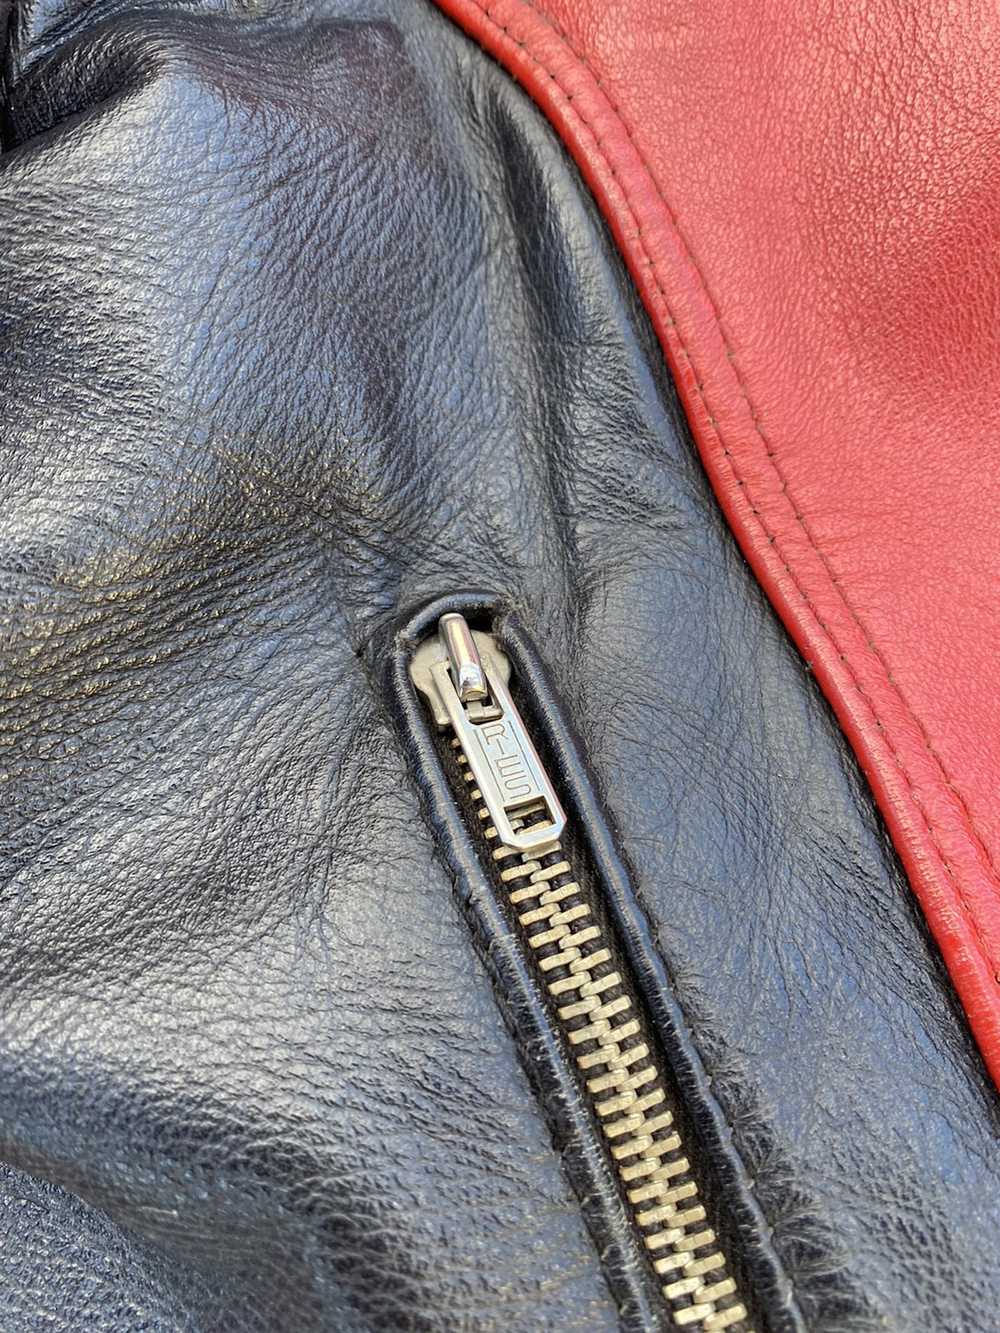 Dainese × Leather Jacket Dainese Vintage leather … - image 3